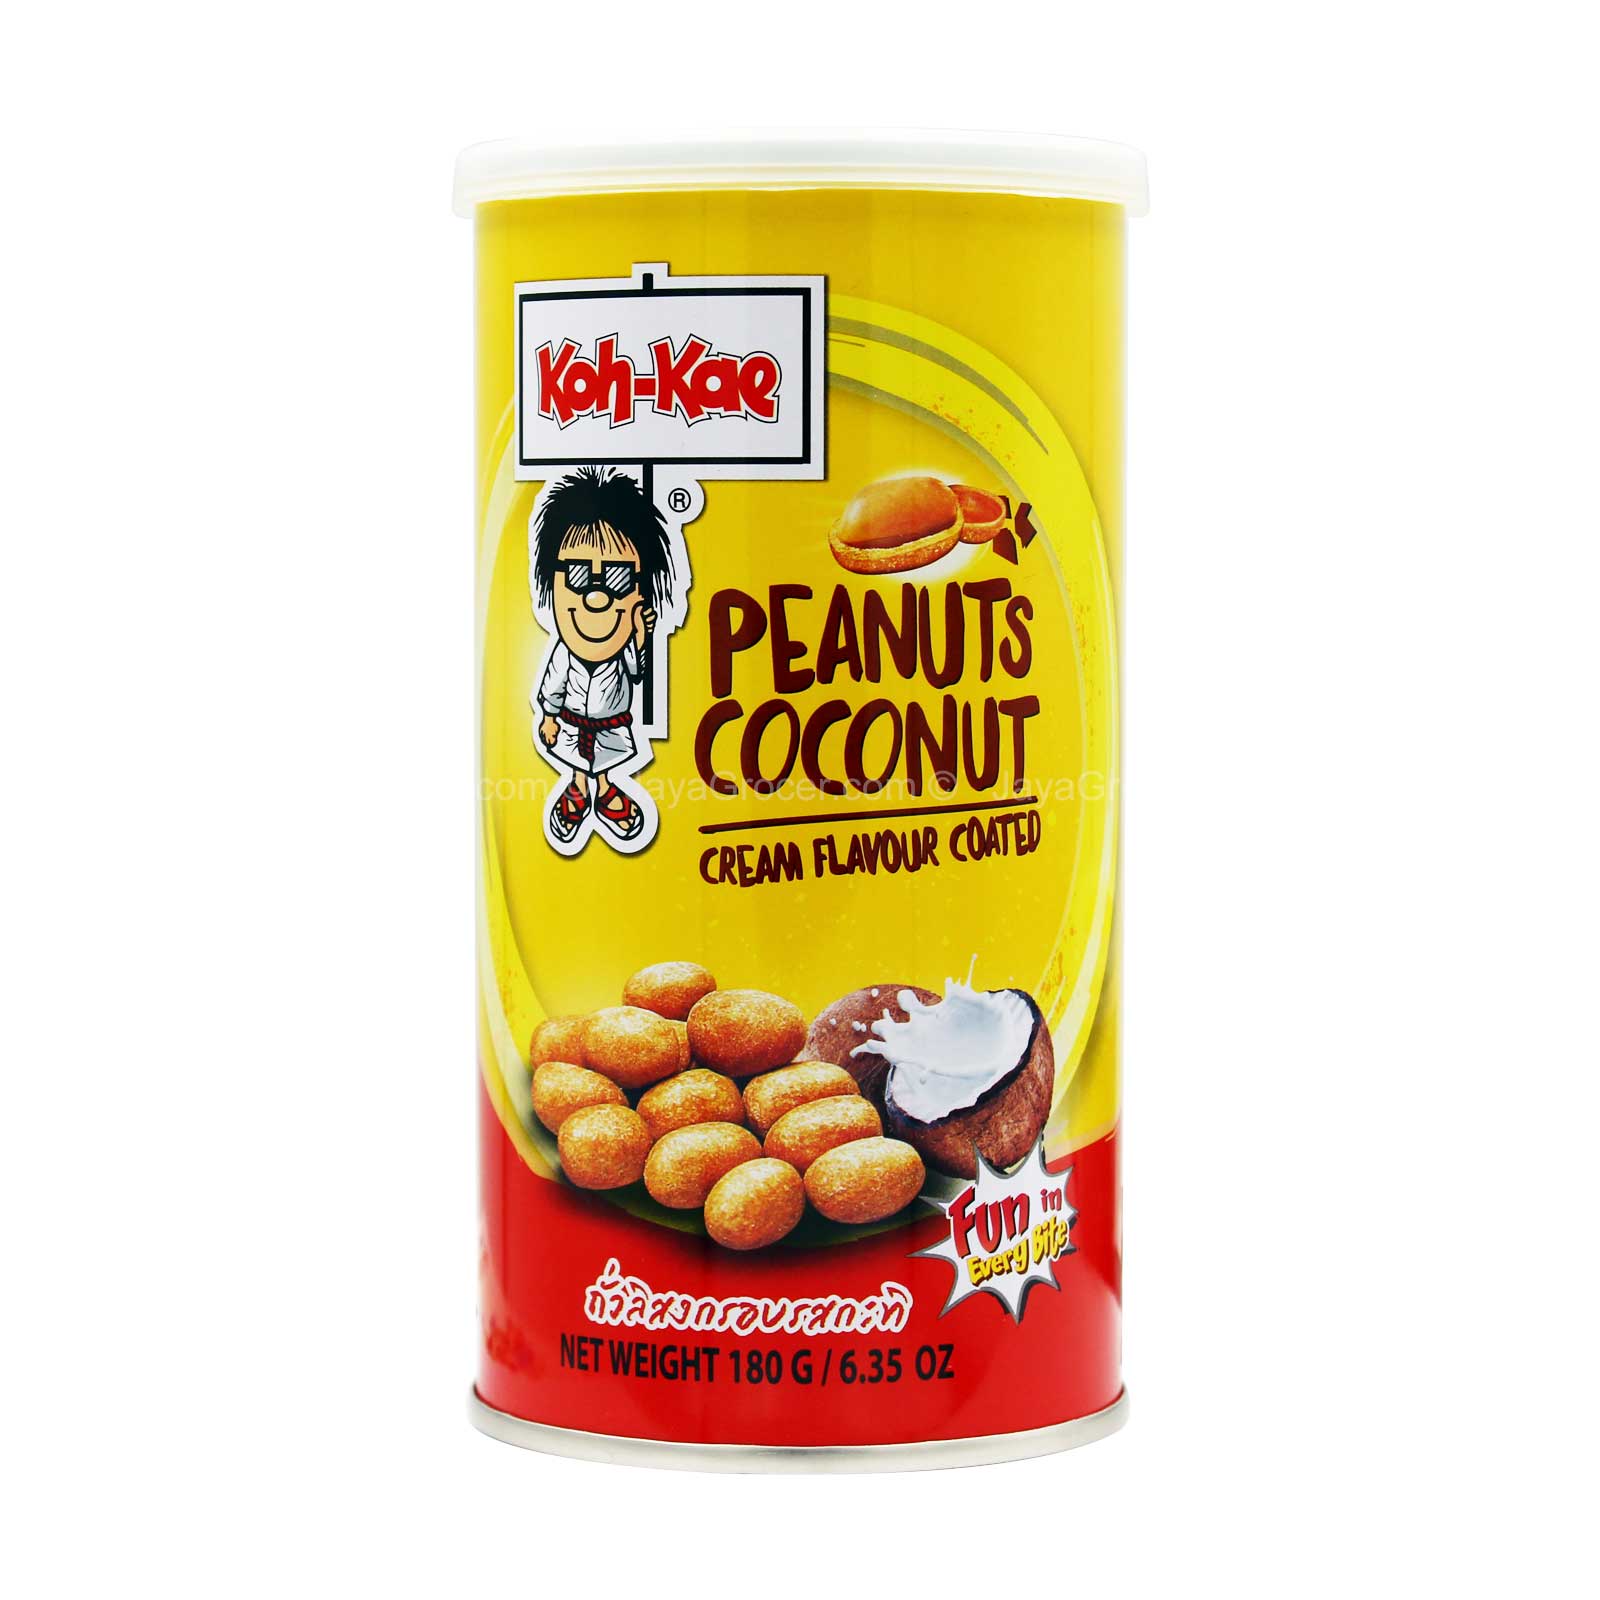 Koh-Kae Logo - Koh-Kae Coconut Cream Flavour Coated Peanuts ... - Jaya Grocer